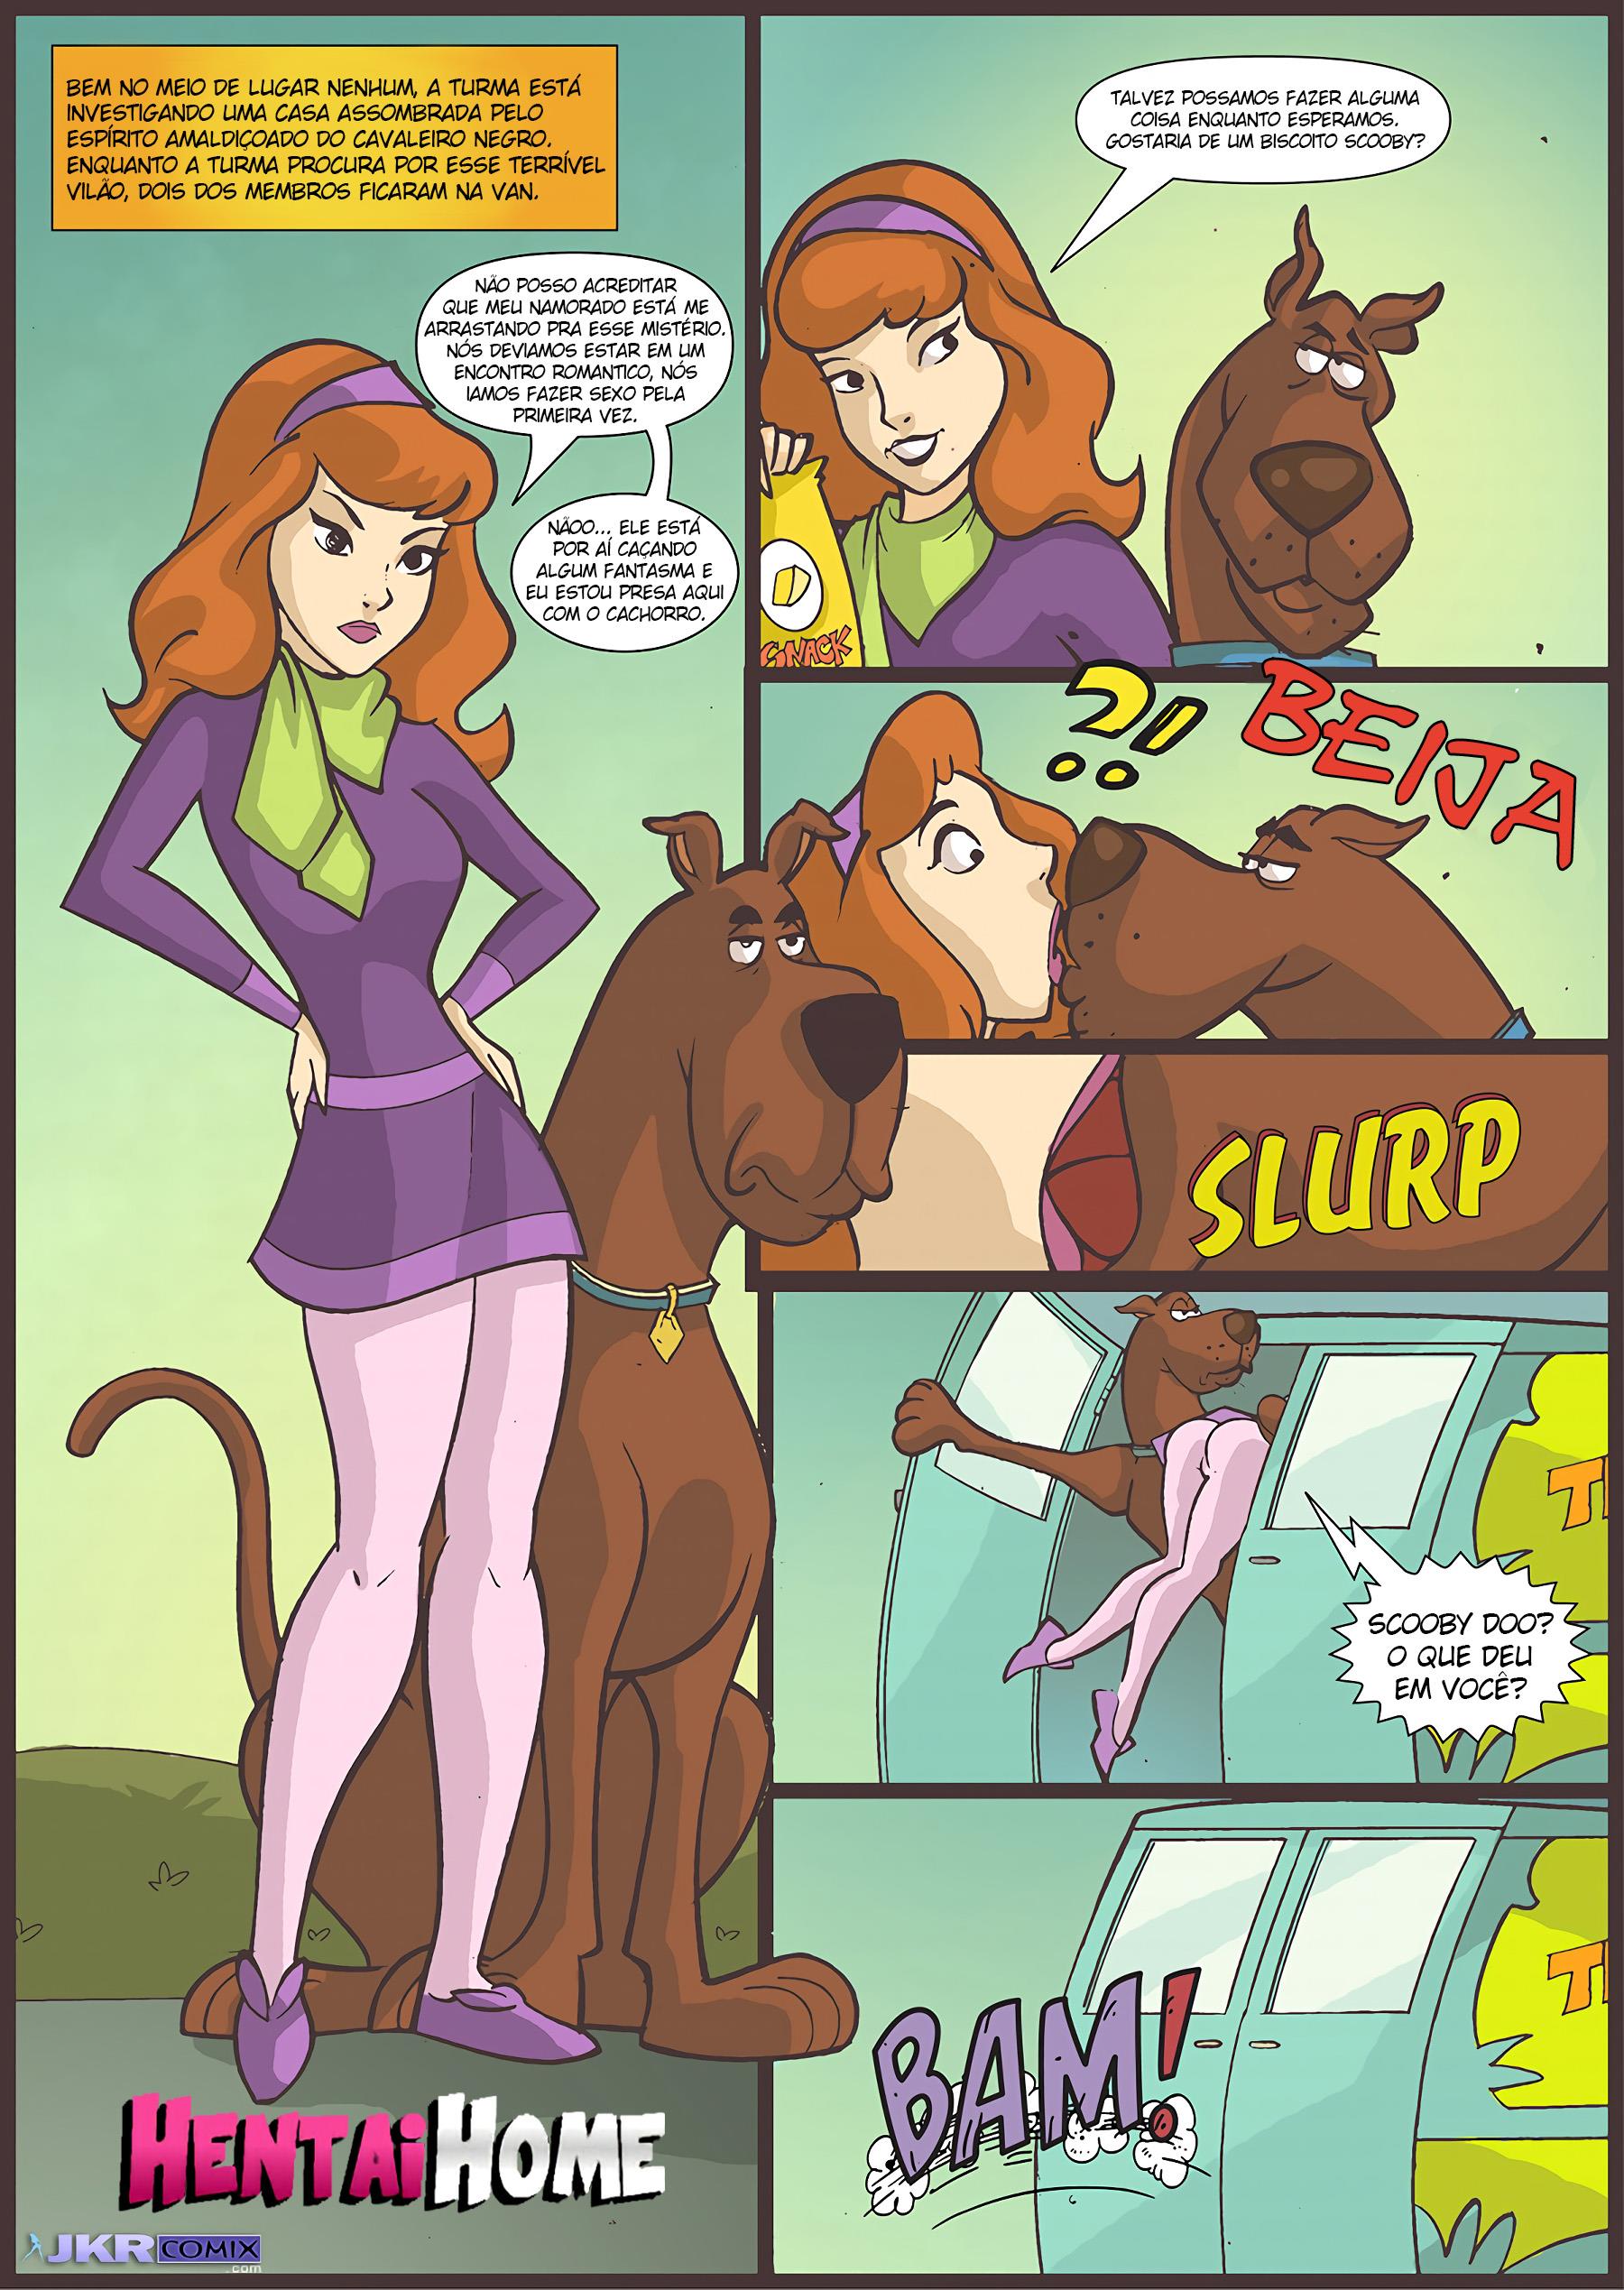 Scooby Doo: O cachorro mau tira cabaço de Daphne - Foto 2